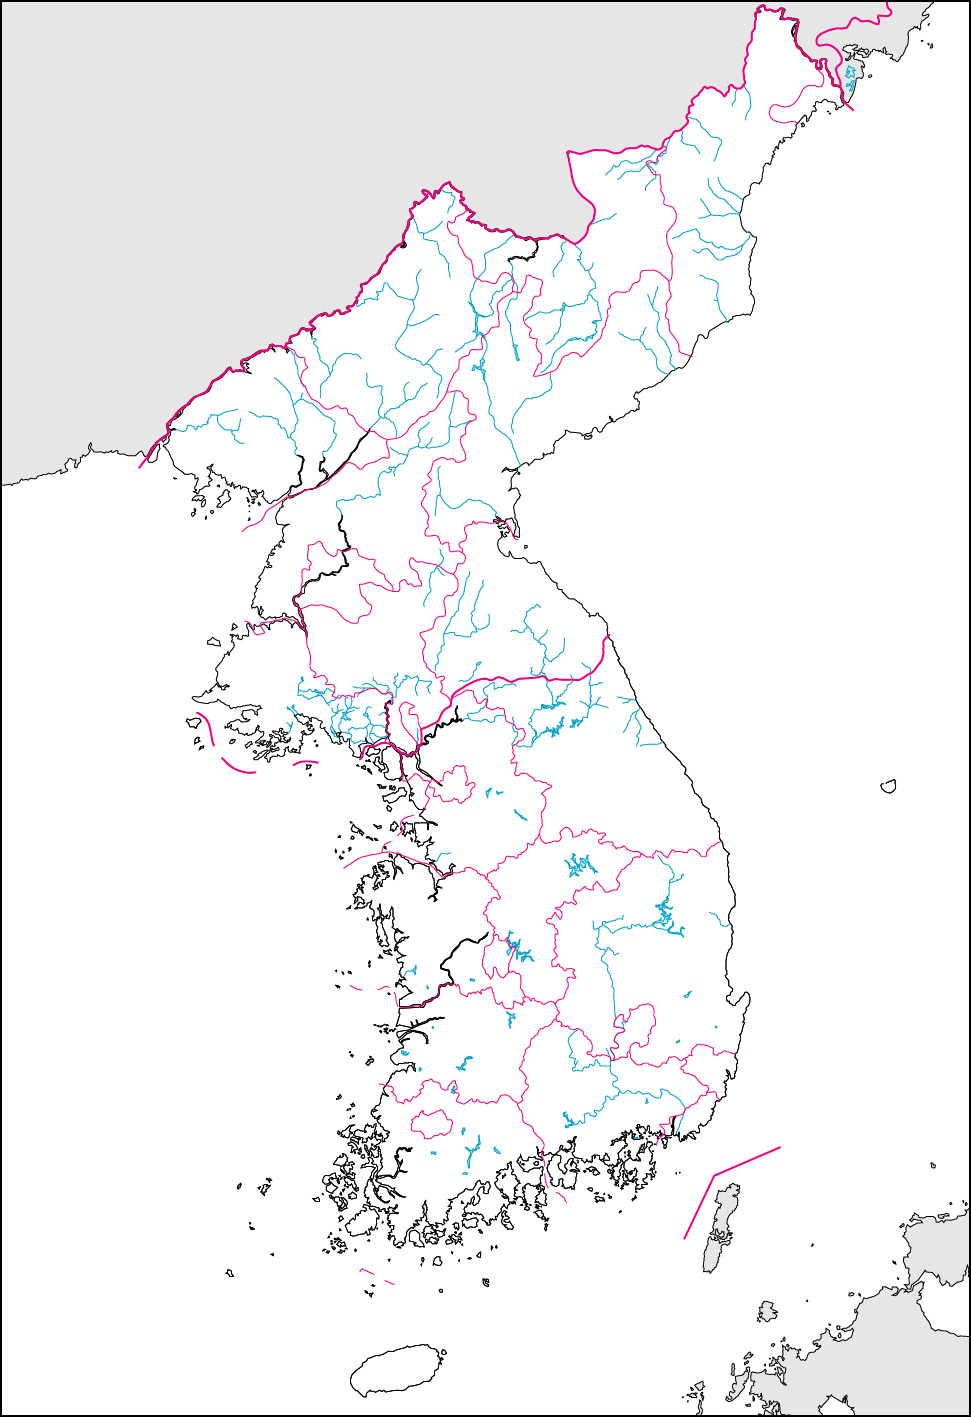 朝鮮半島白地図(行政区分記載)の画像